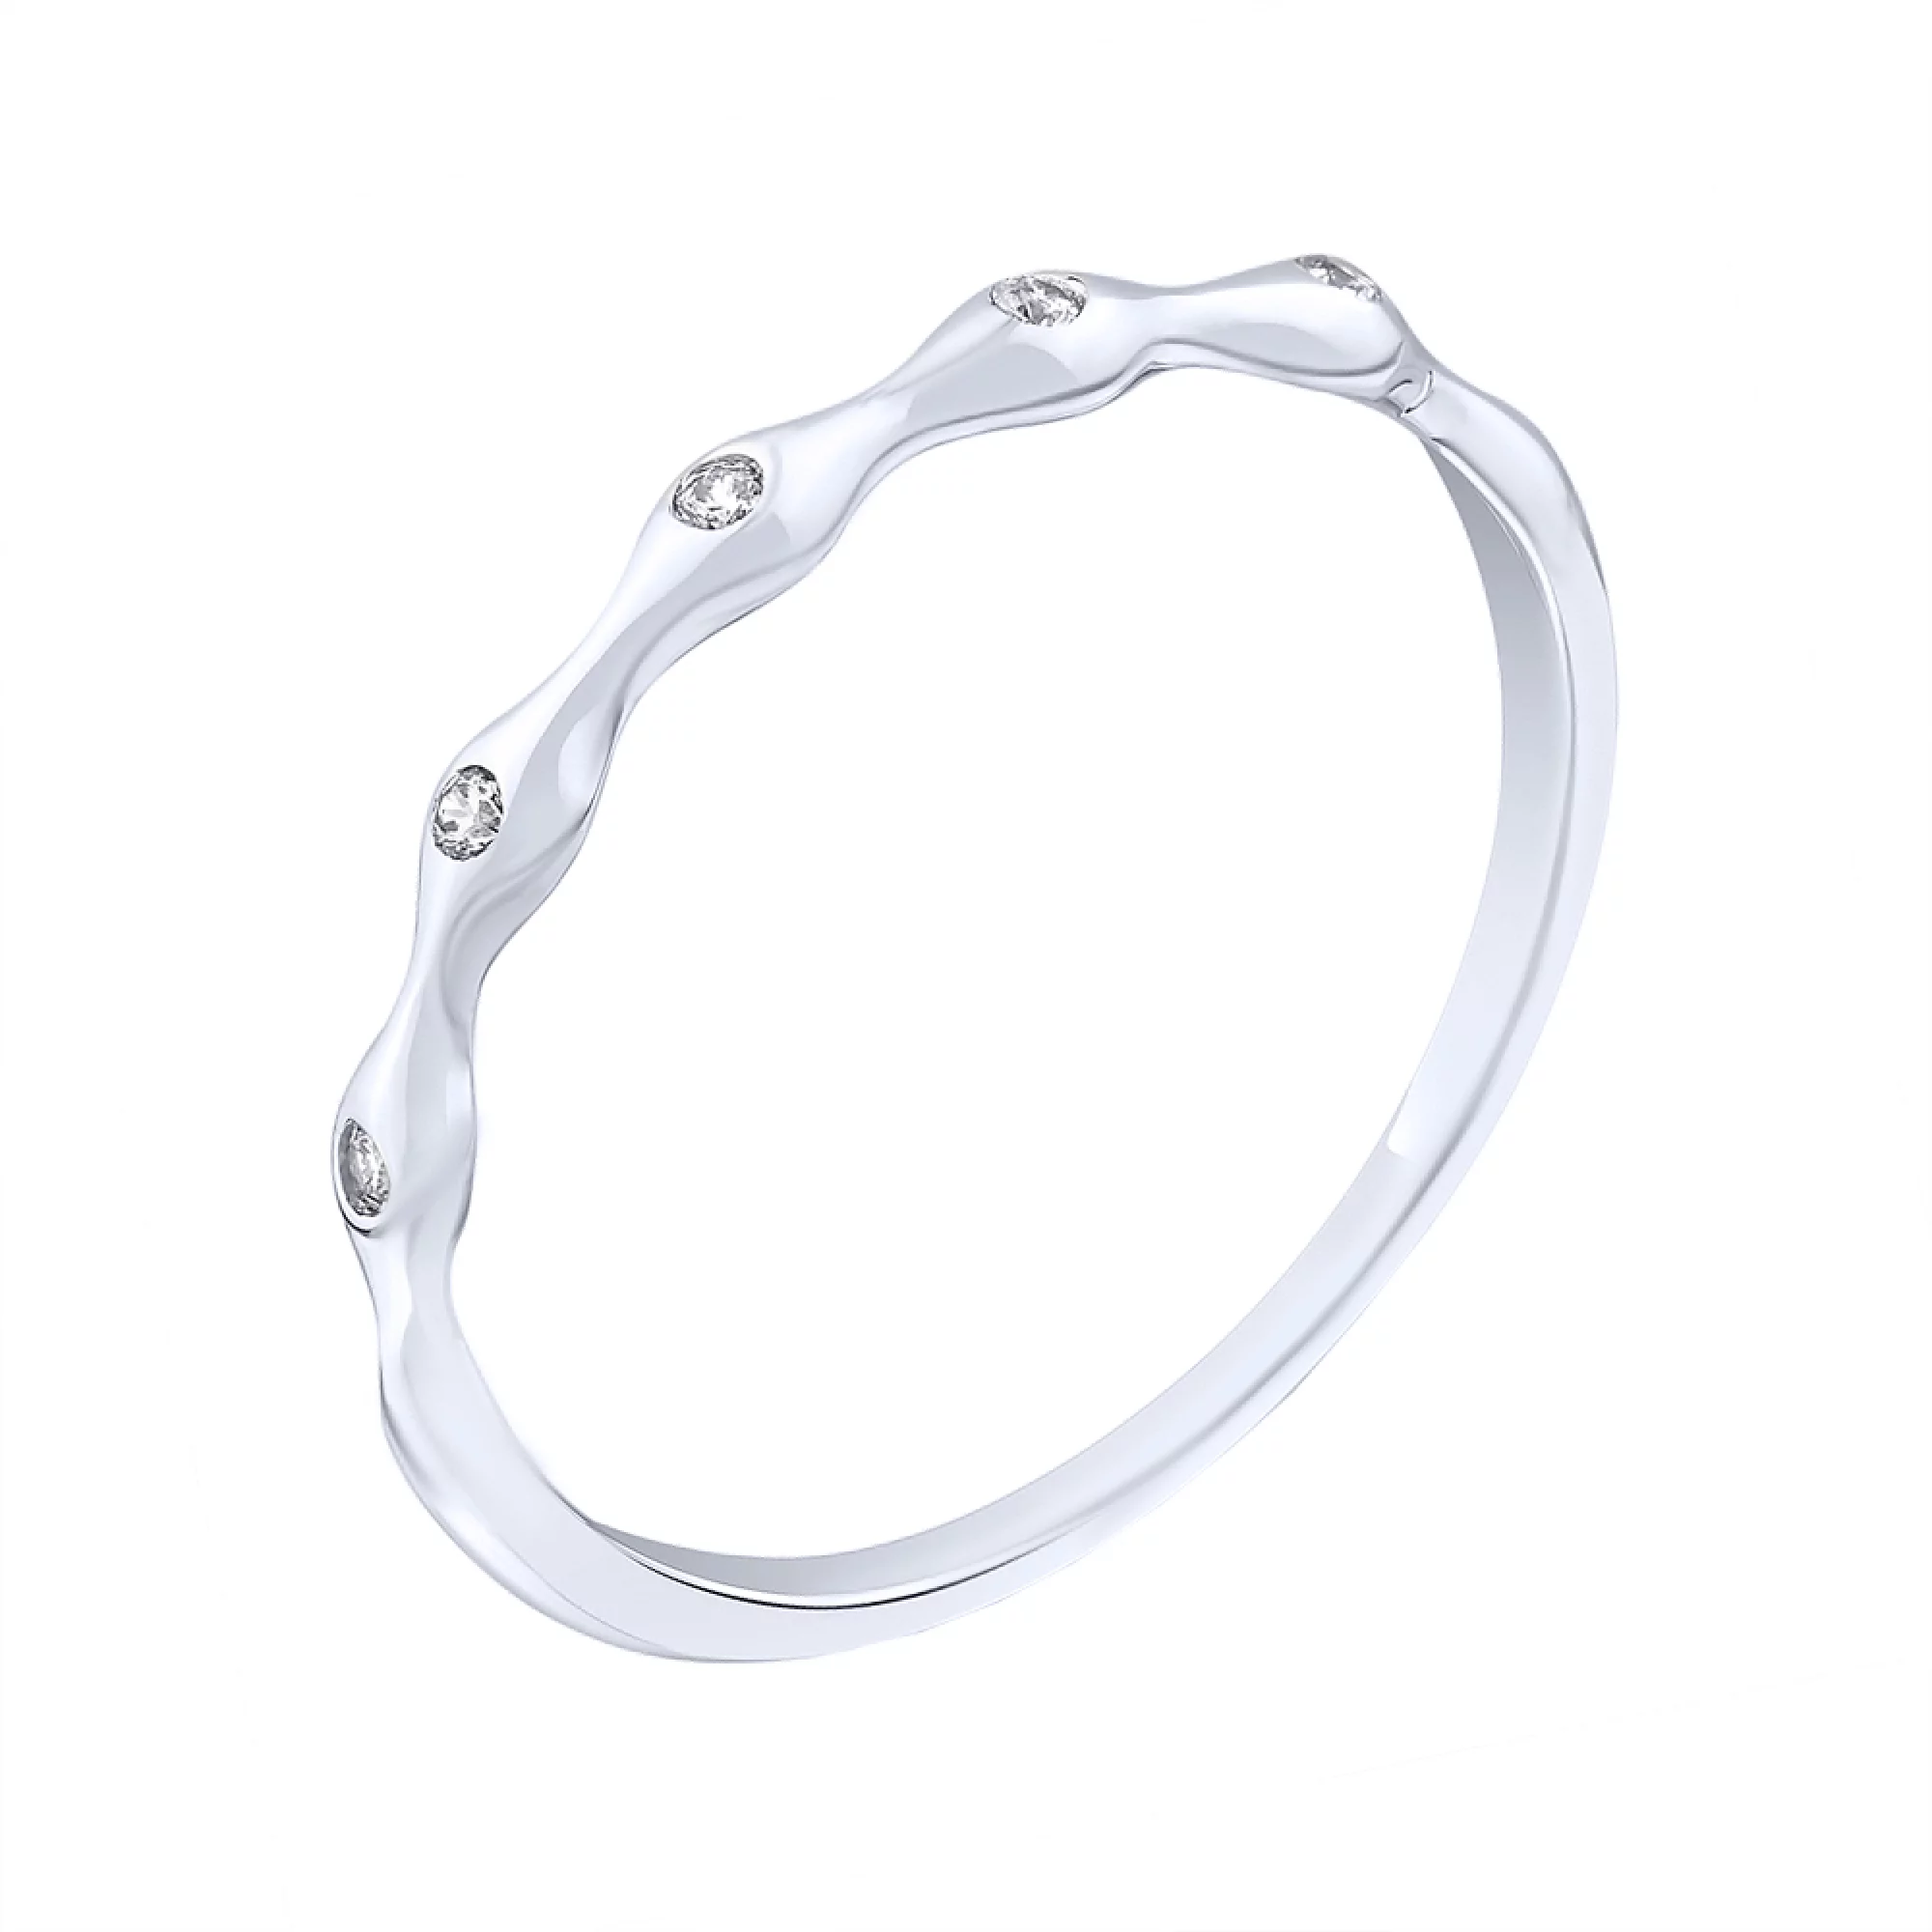 Тонкое серебряное кольцо с фианитами - 1639755 – изображение 1